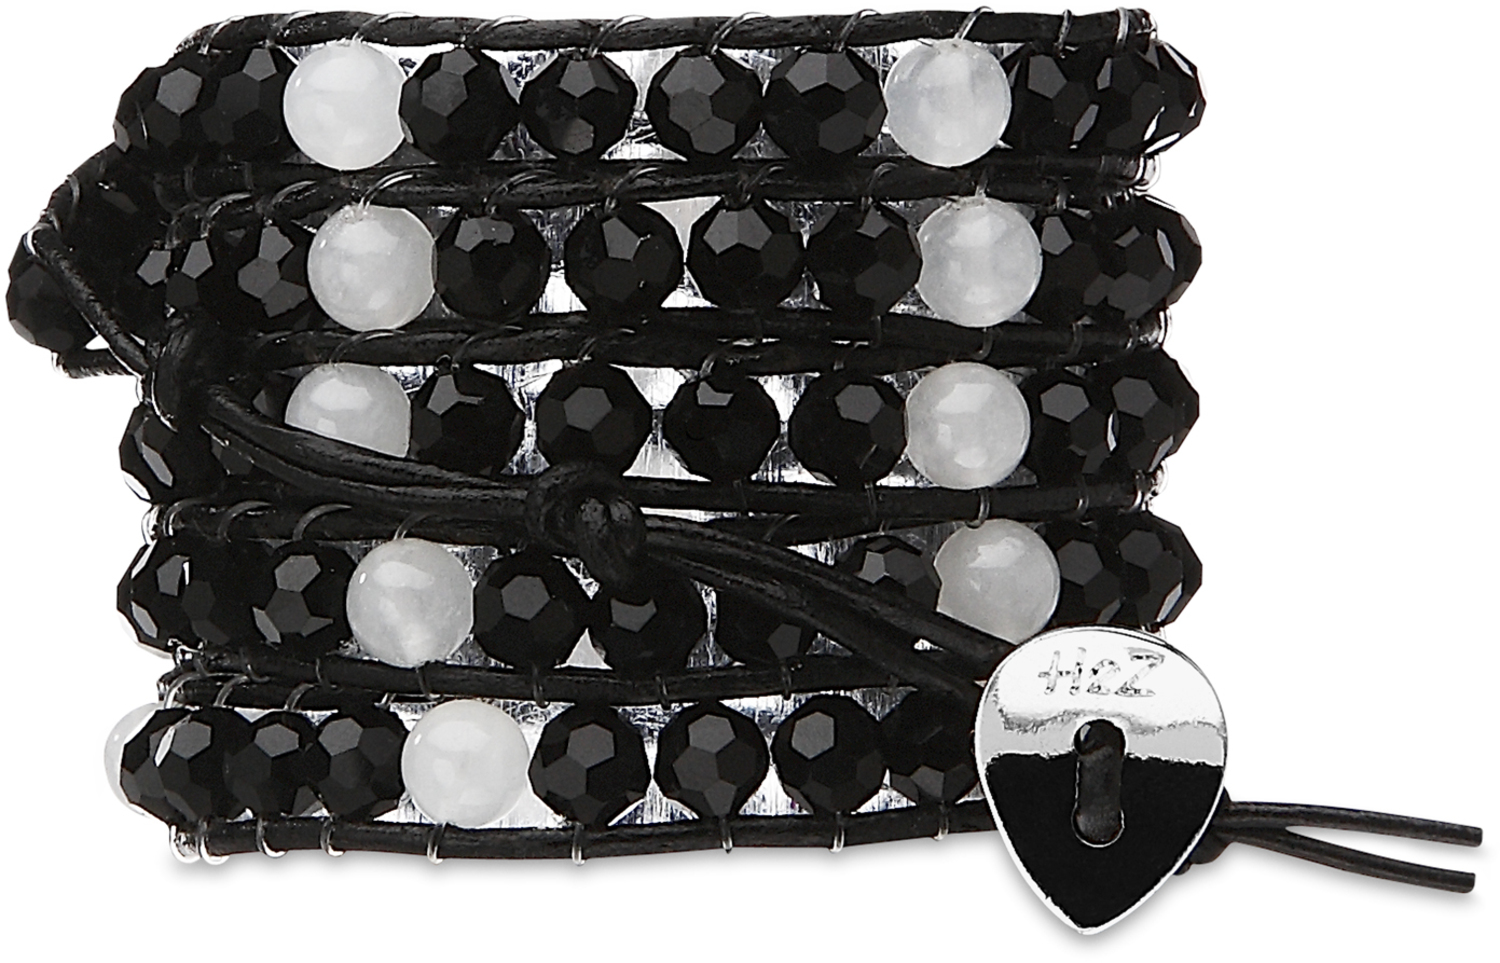 Onyx-Black & Alabaster Glass by H2Z - Wrap Bracelets - Onyx-Black & Alabaster Glass - 35 Inch Black and Alabaster Glass Beads w/ Black Leather Wrap Bracelet
